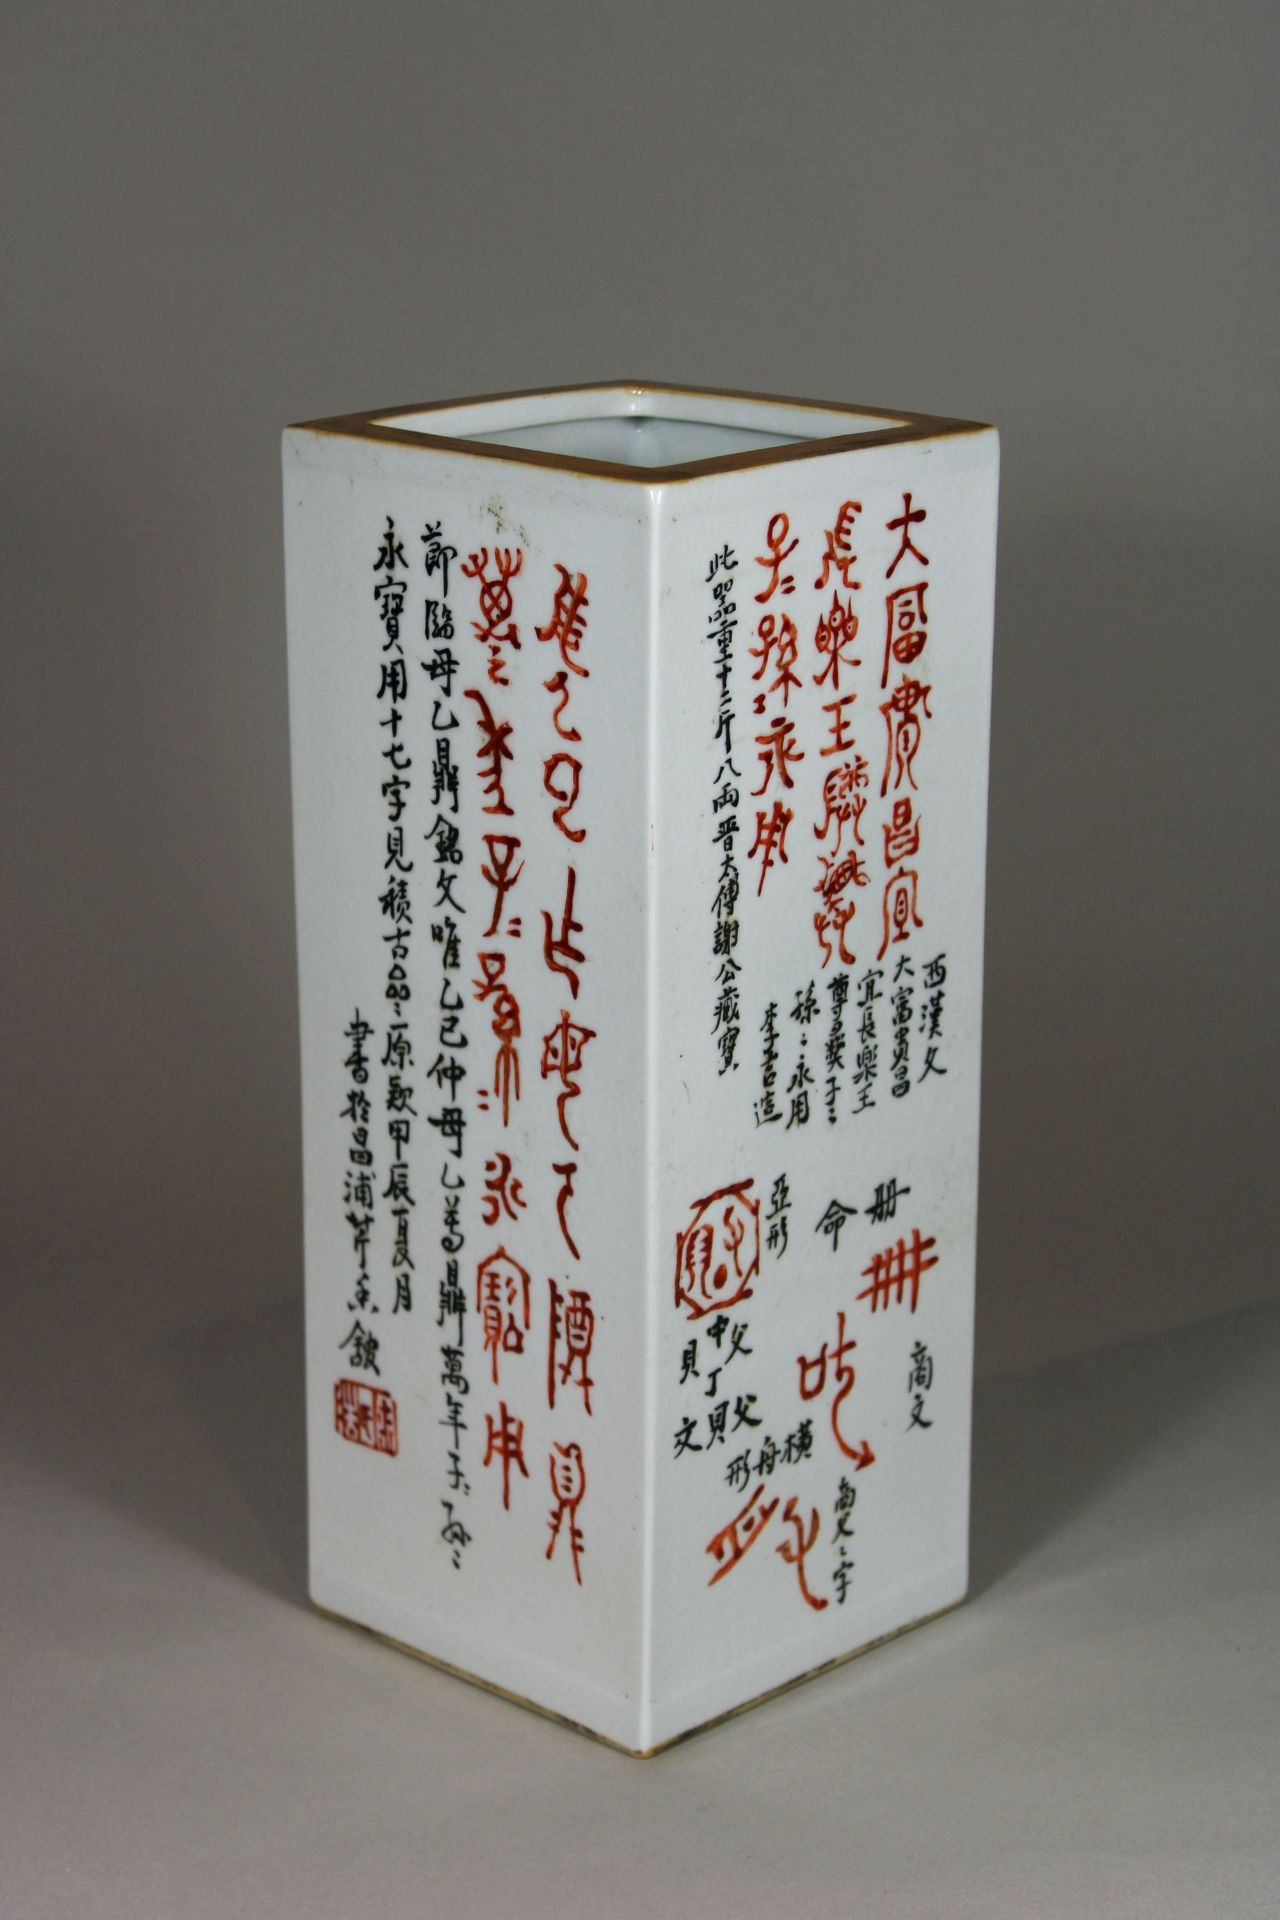 Viereckige Vase, China, Porzellan, rote Vierzeichen Guangxu Marke, kalligrafischen Motiven, H.: 28 - Bild 2 aus 3